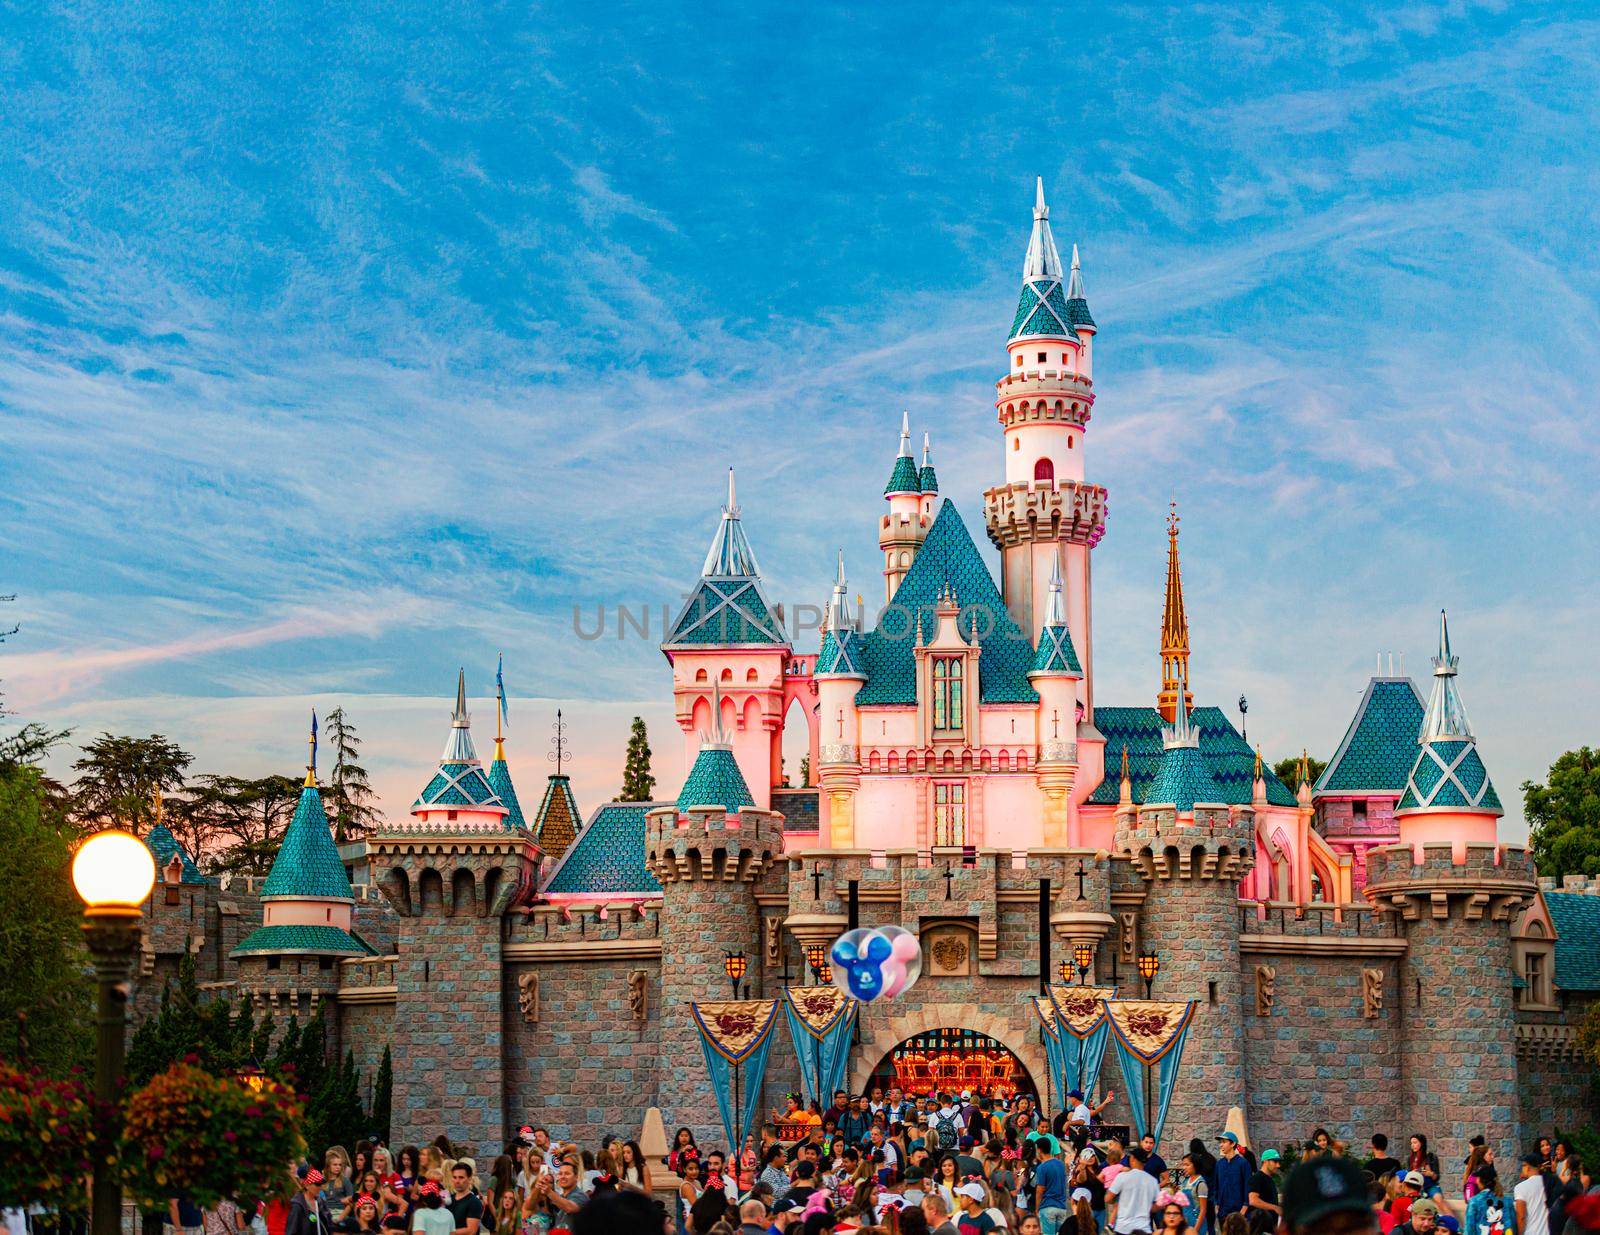 Legendary Disney castle in Disneyland by Yolshin